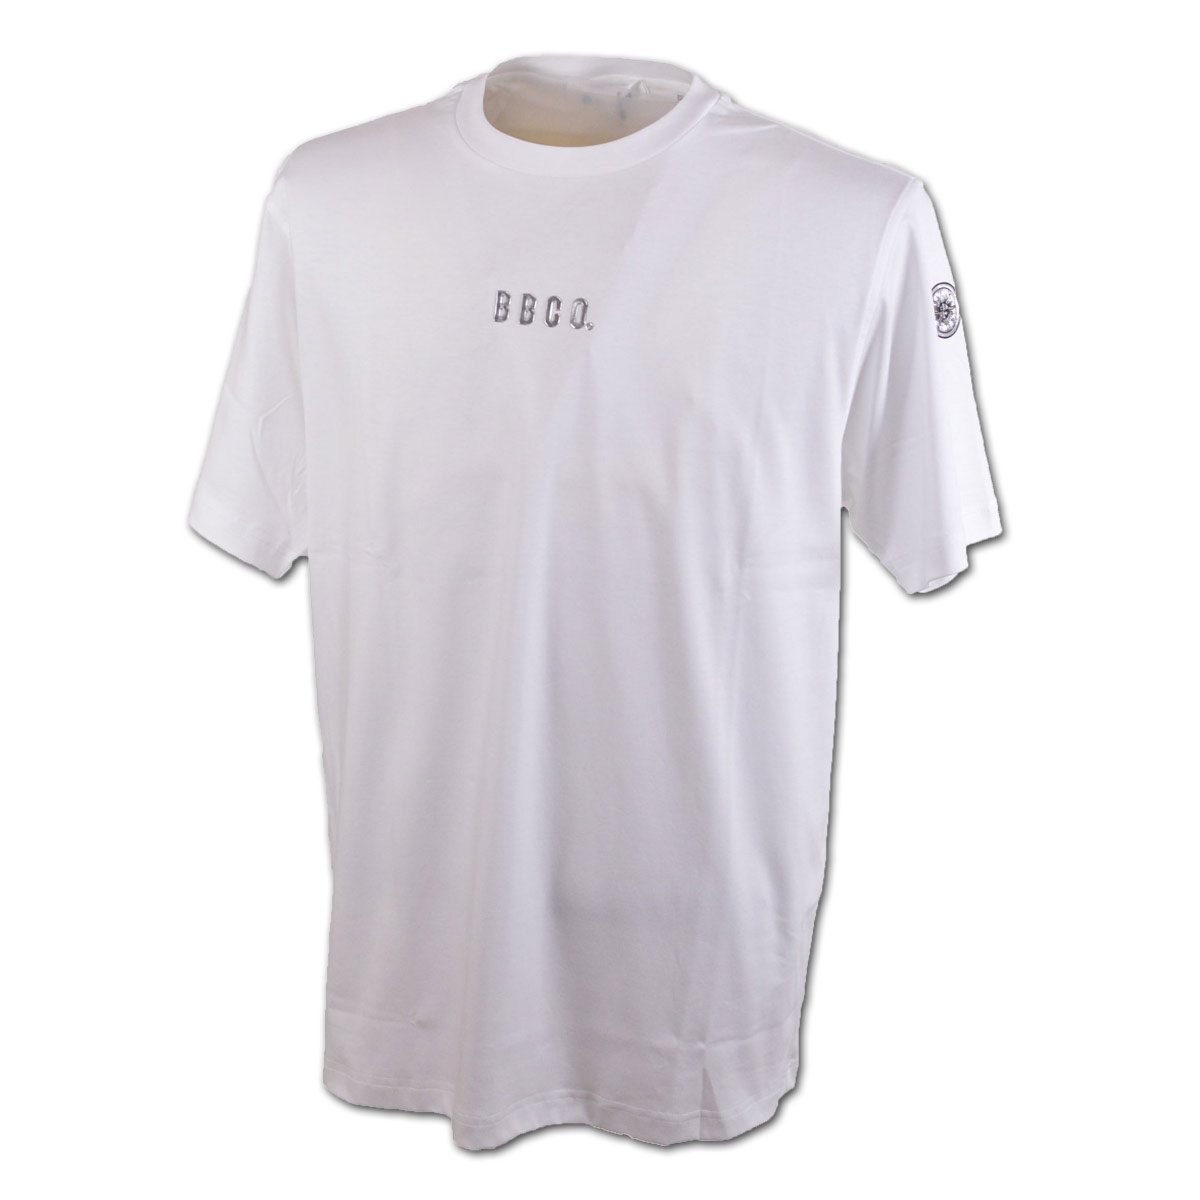 BBCO ビビコ 半袖Tシャツ メンズ 春夏用 白 黒 M L LL 31-2501-01